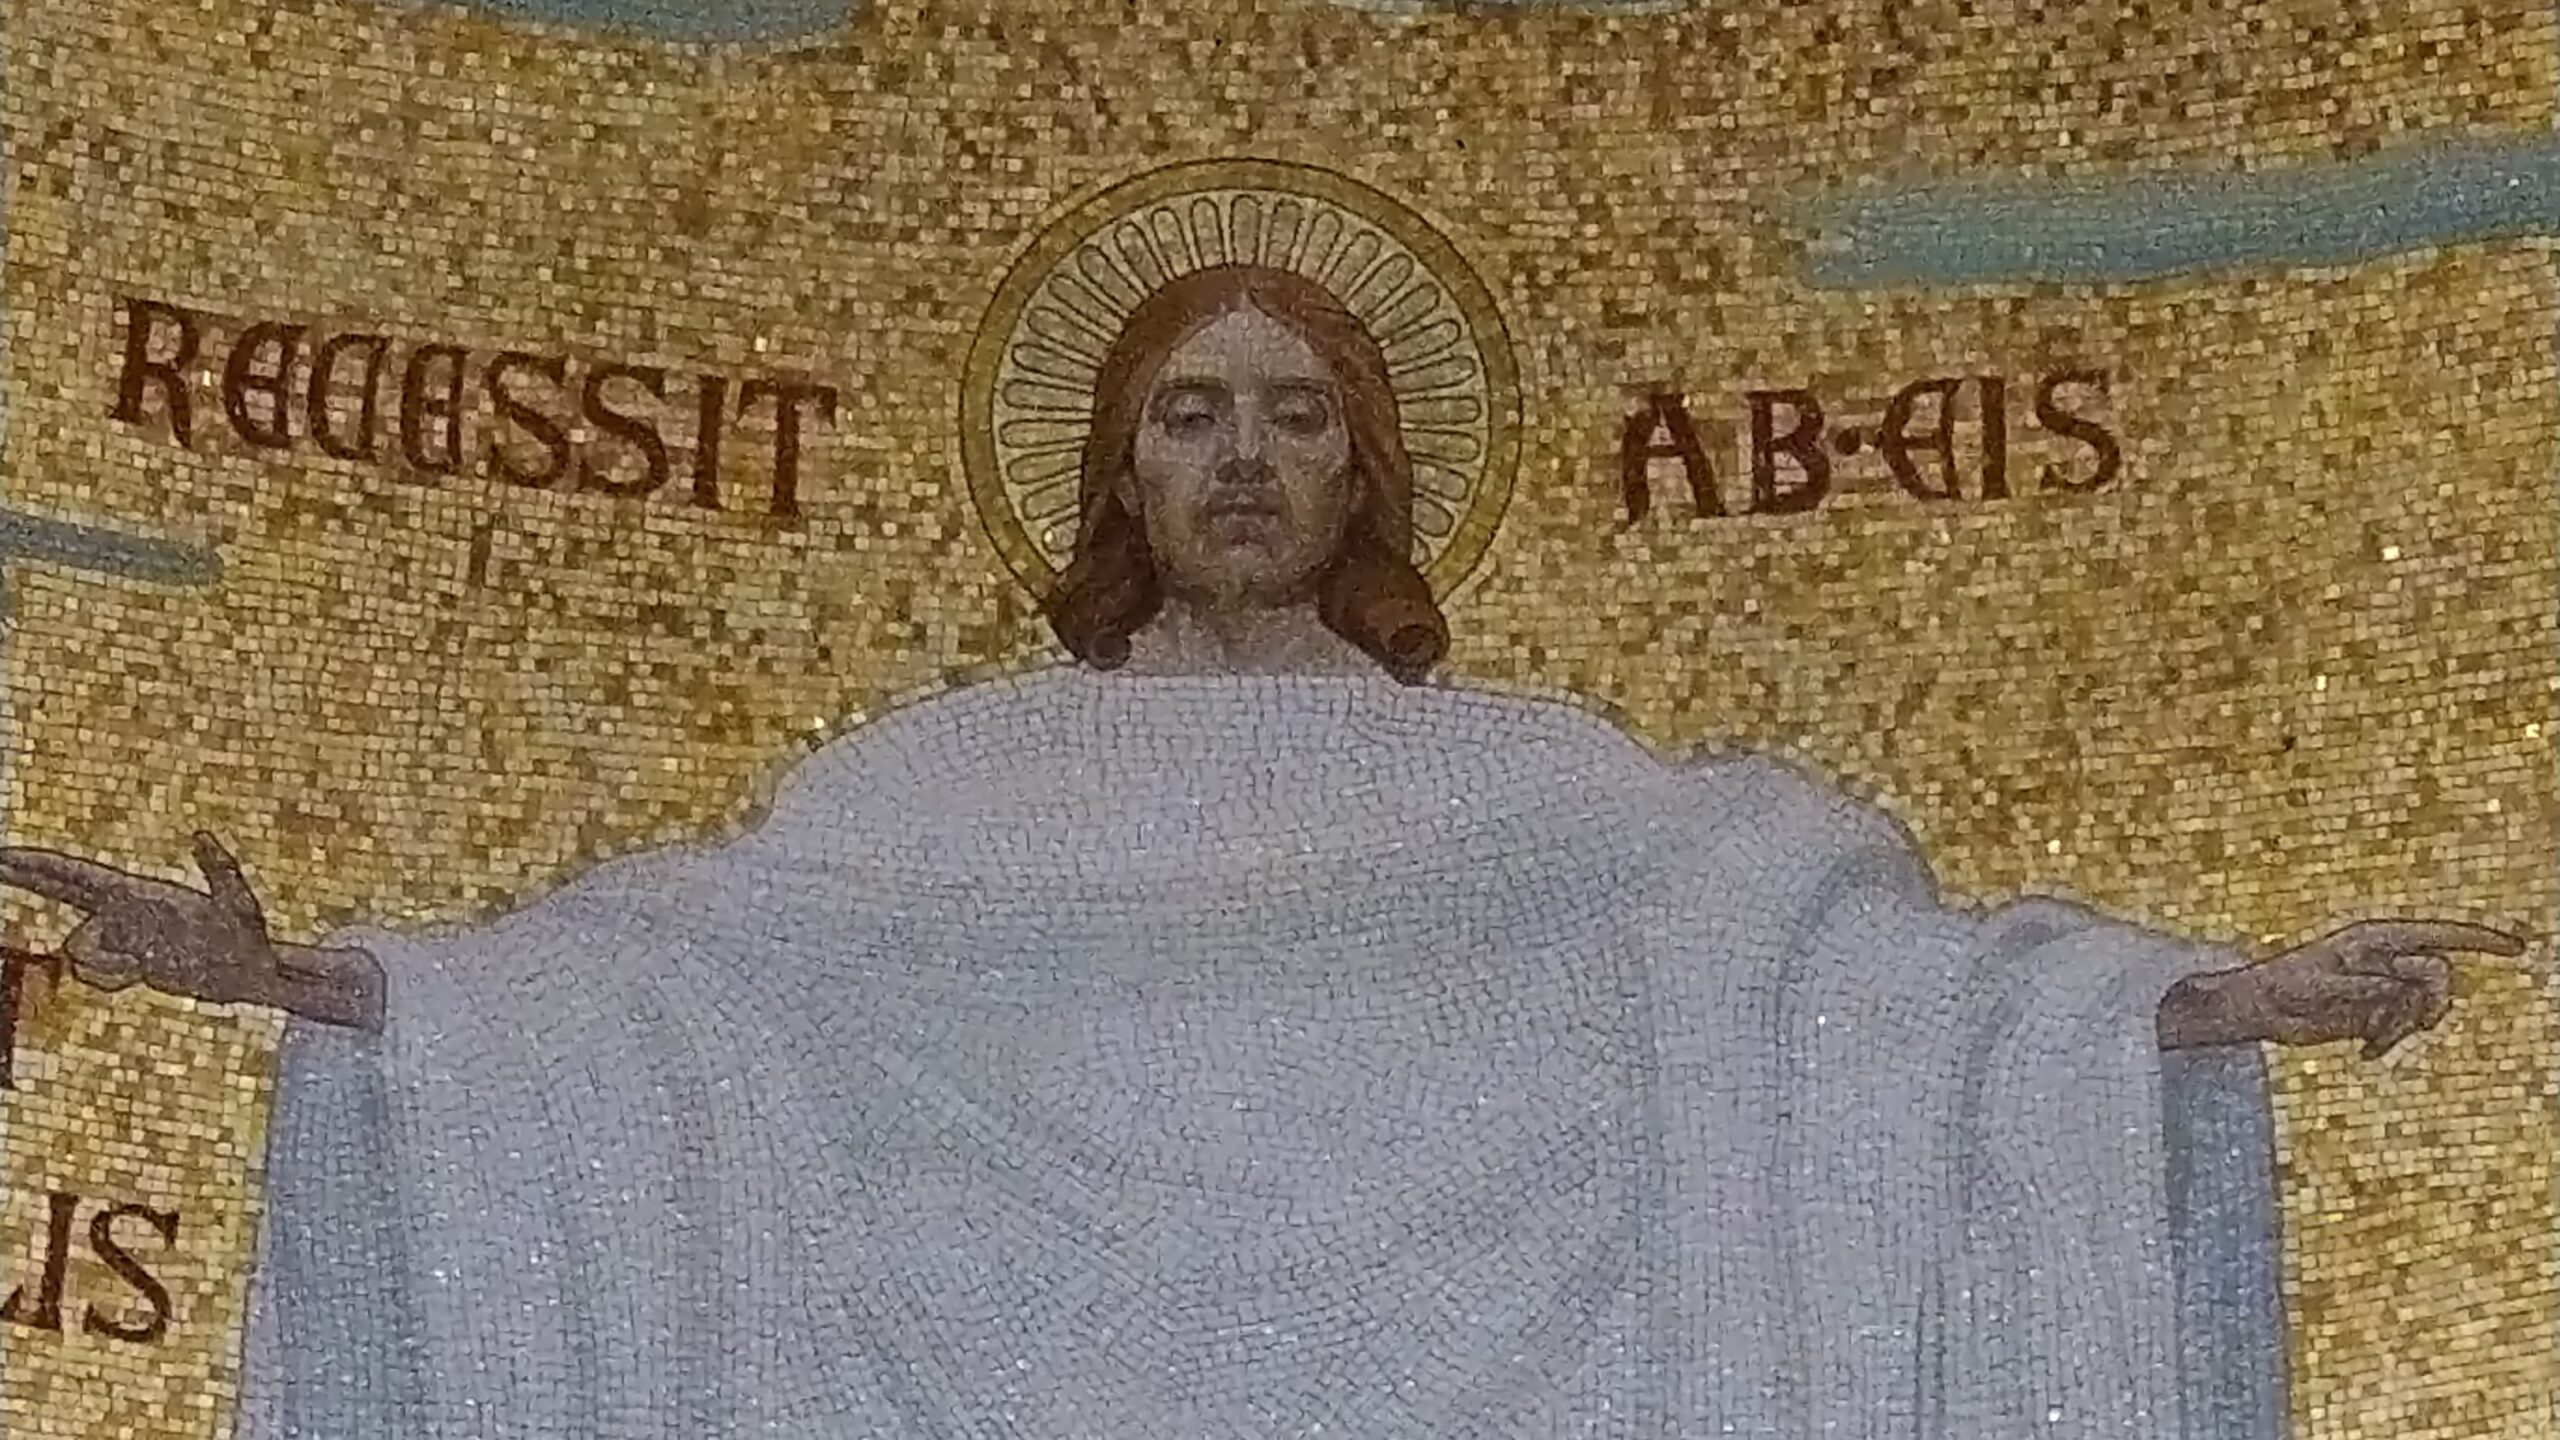 Mosaïque du Christ en son Ascension. Basilique du Rosaire. Sanctuaire de Lourdes